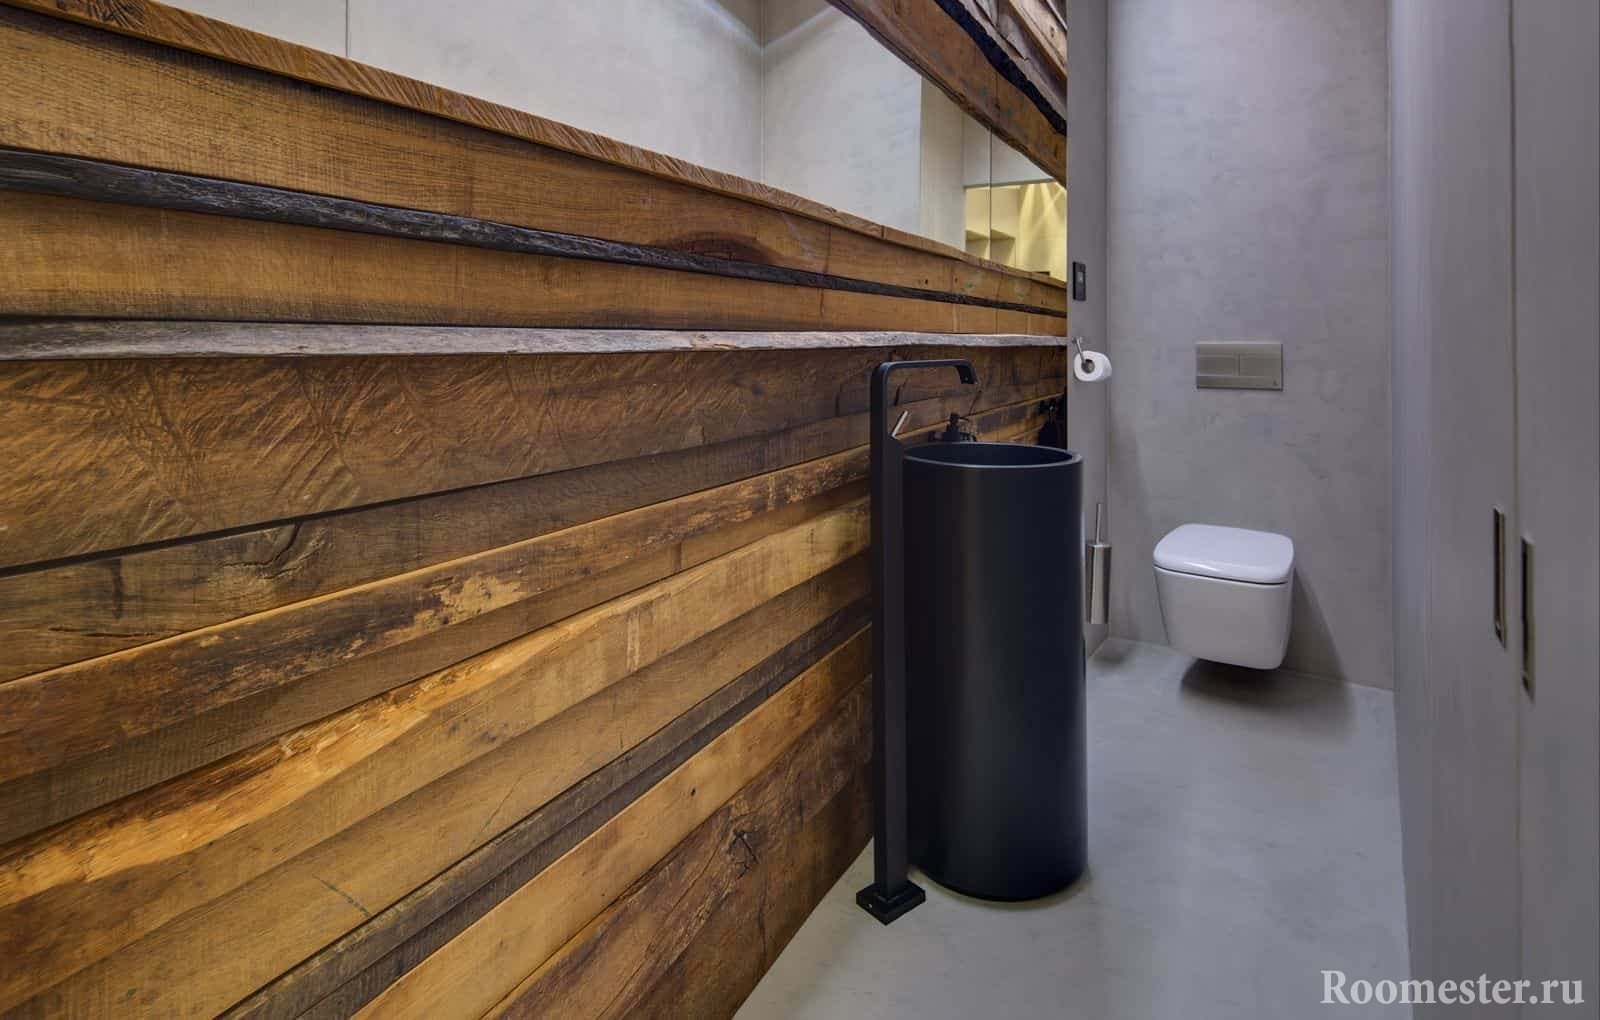 Moderan dizajn malog WC-a u eko stilu s neobičnim sudoperom